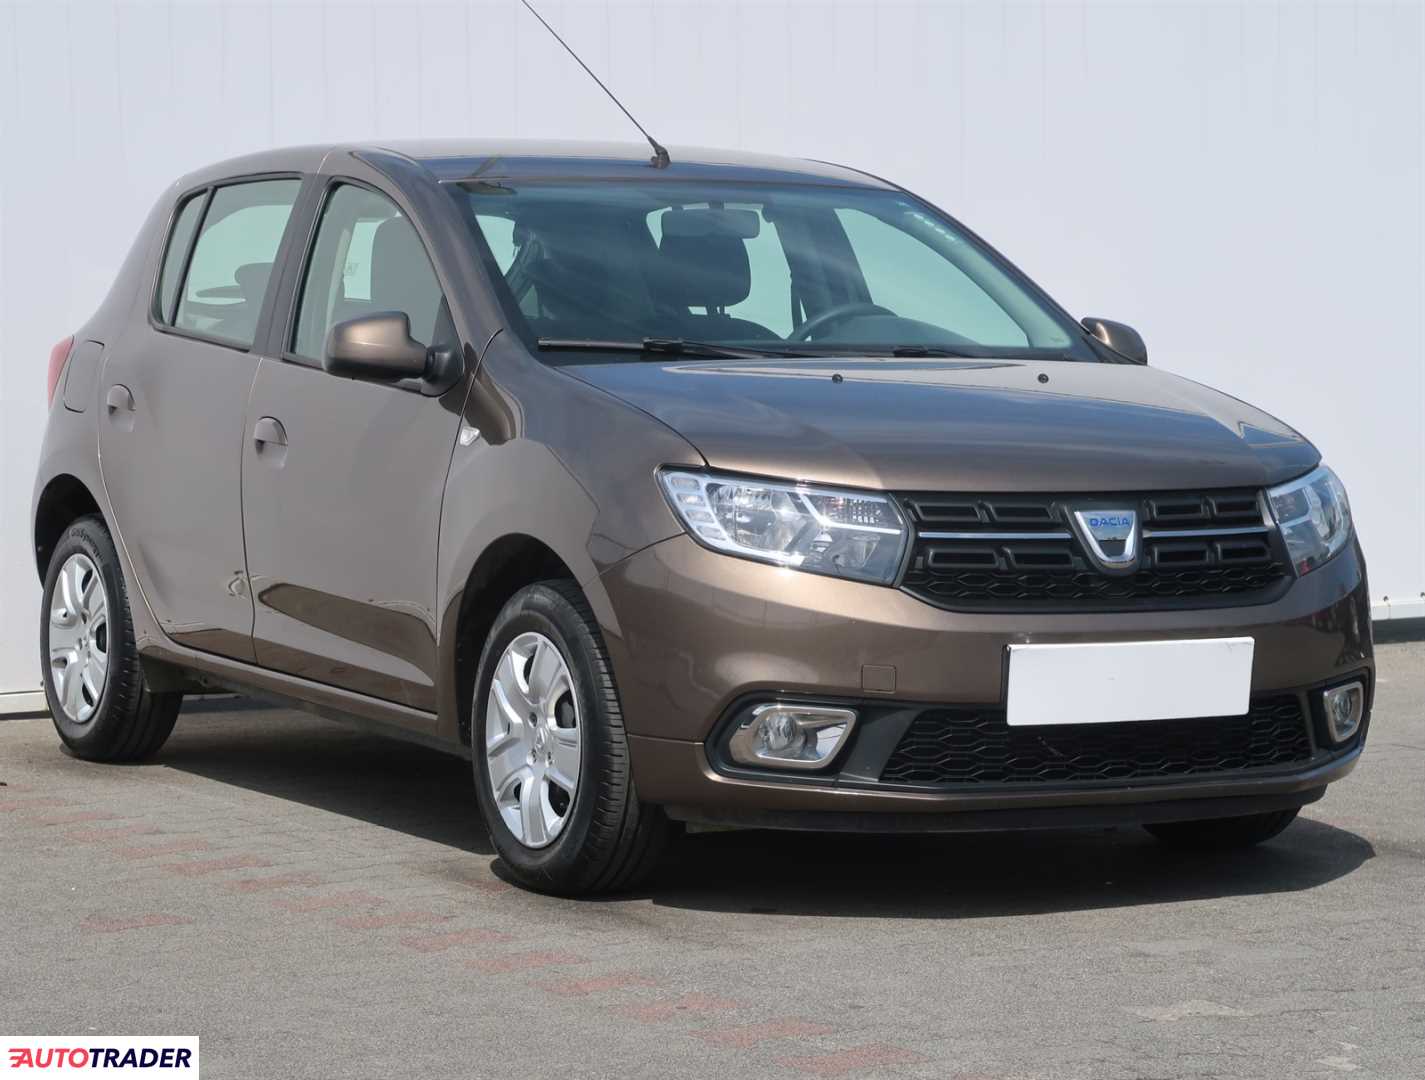 Dacia Sandero 2019 1.0 72 KM